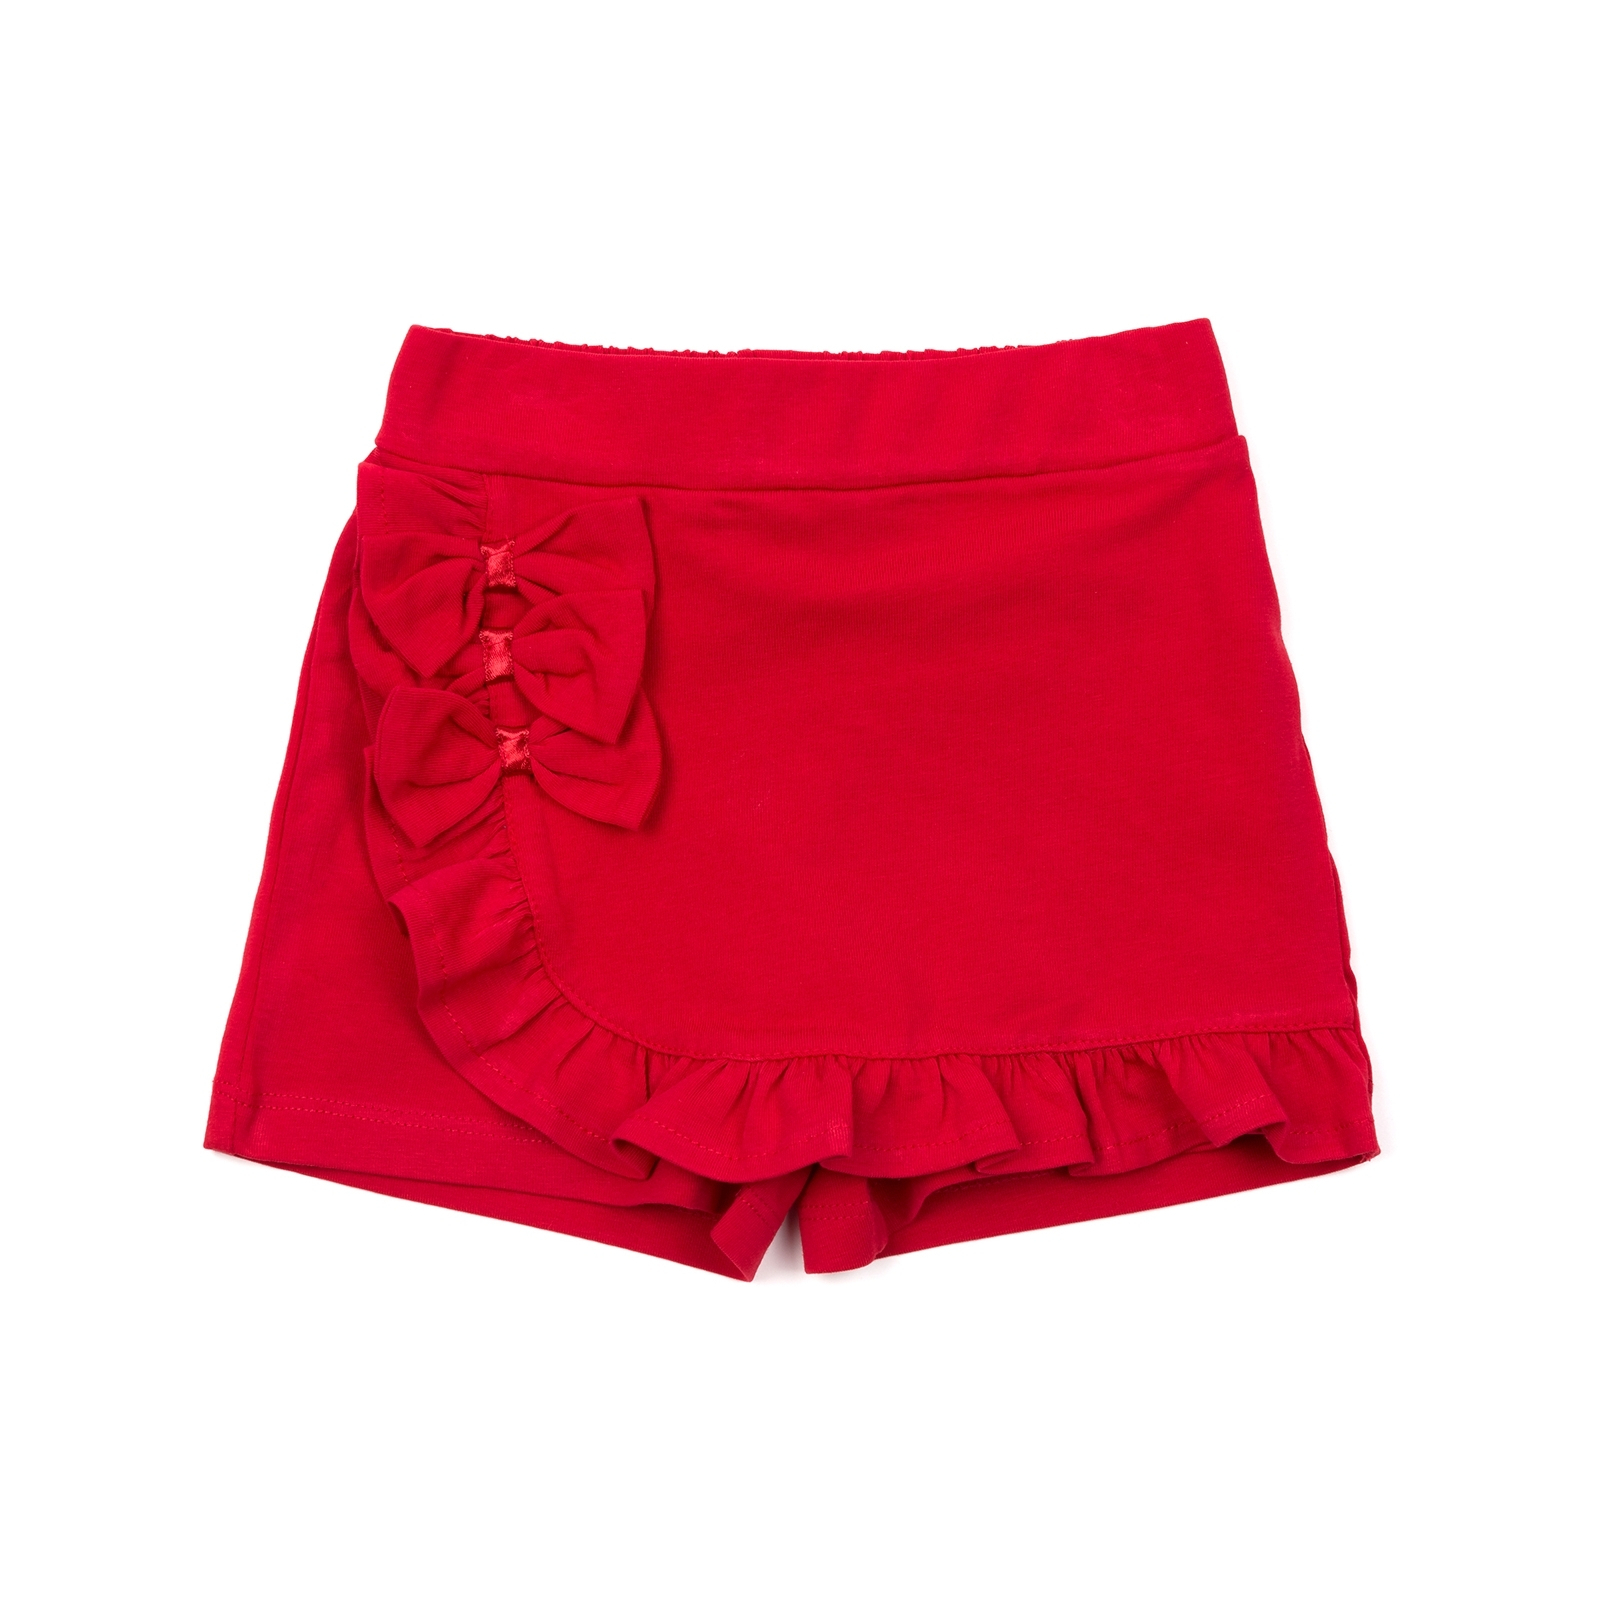 Шорты Breeze юбка (12416-116G-red)